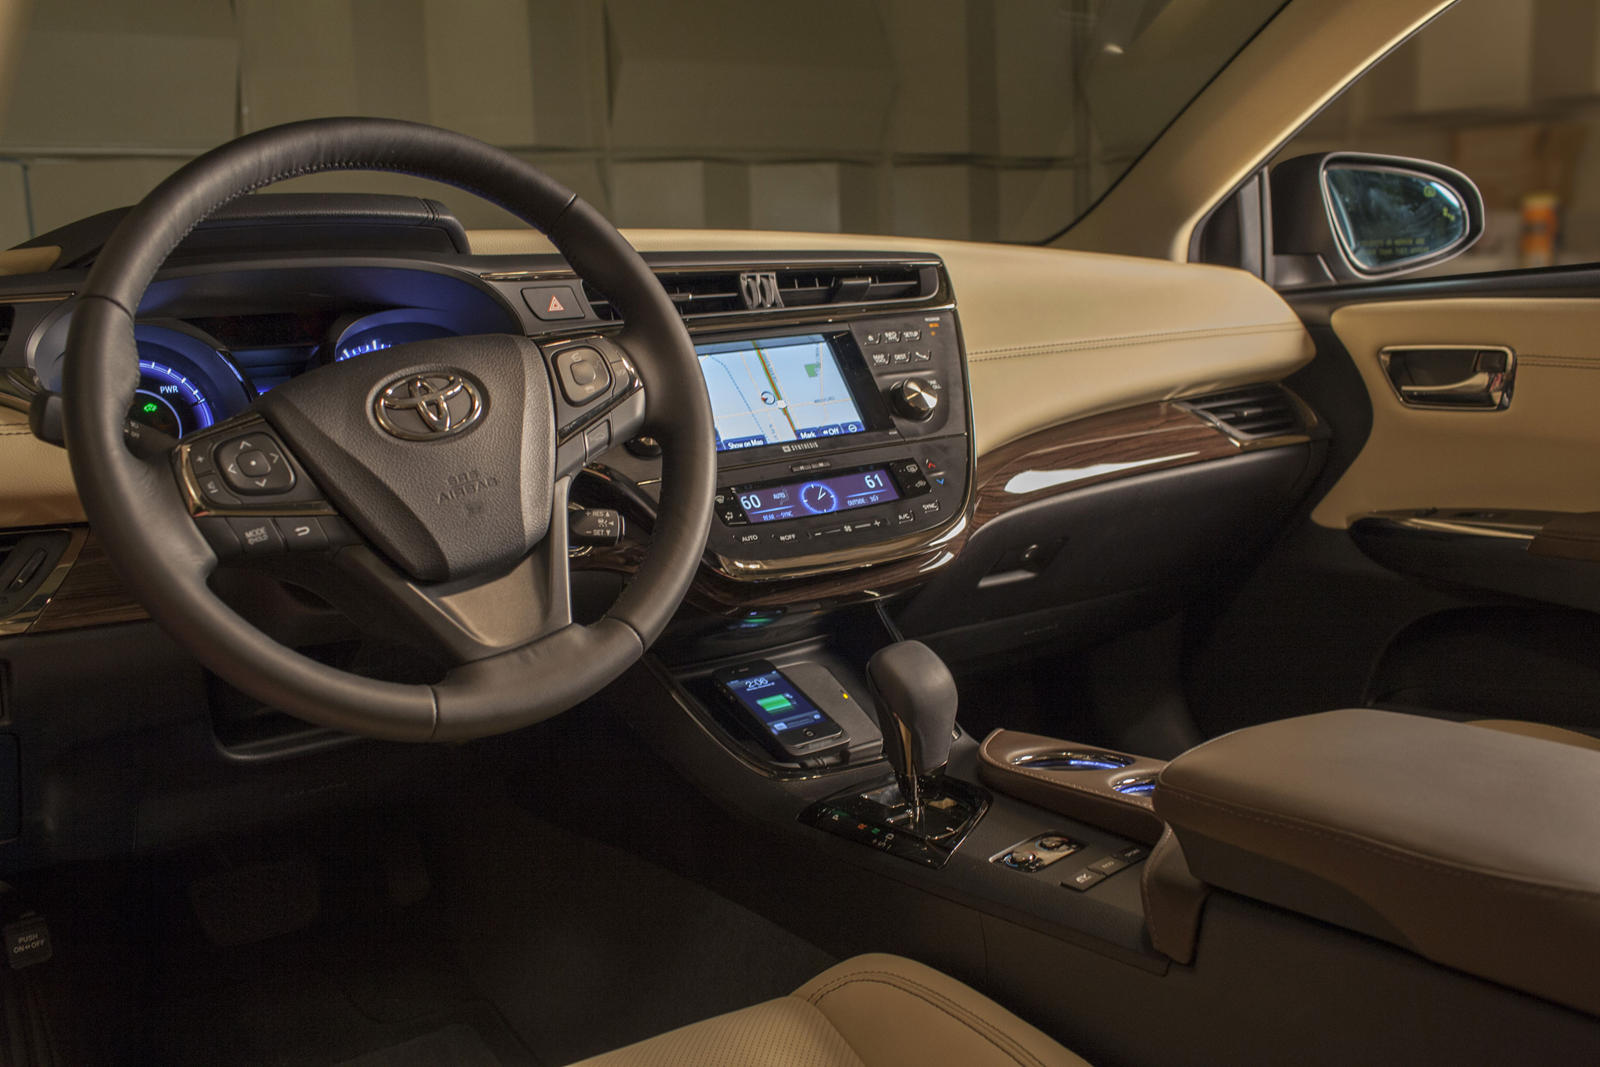 2014 Toyota Avalon Dashboard